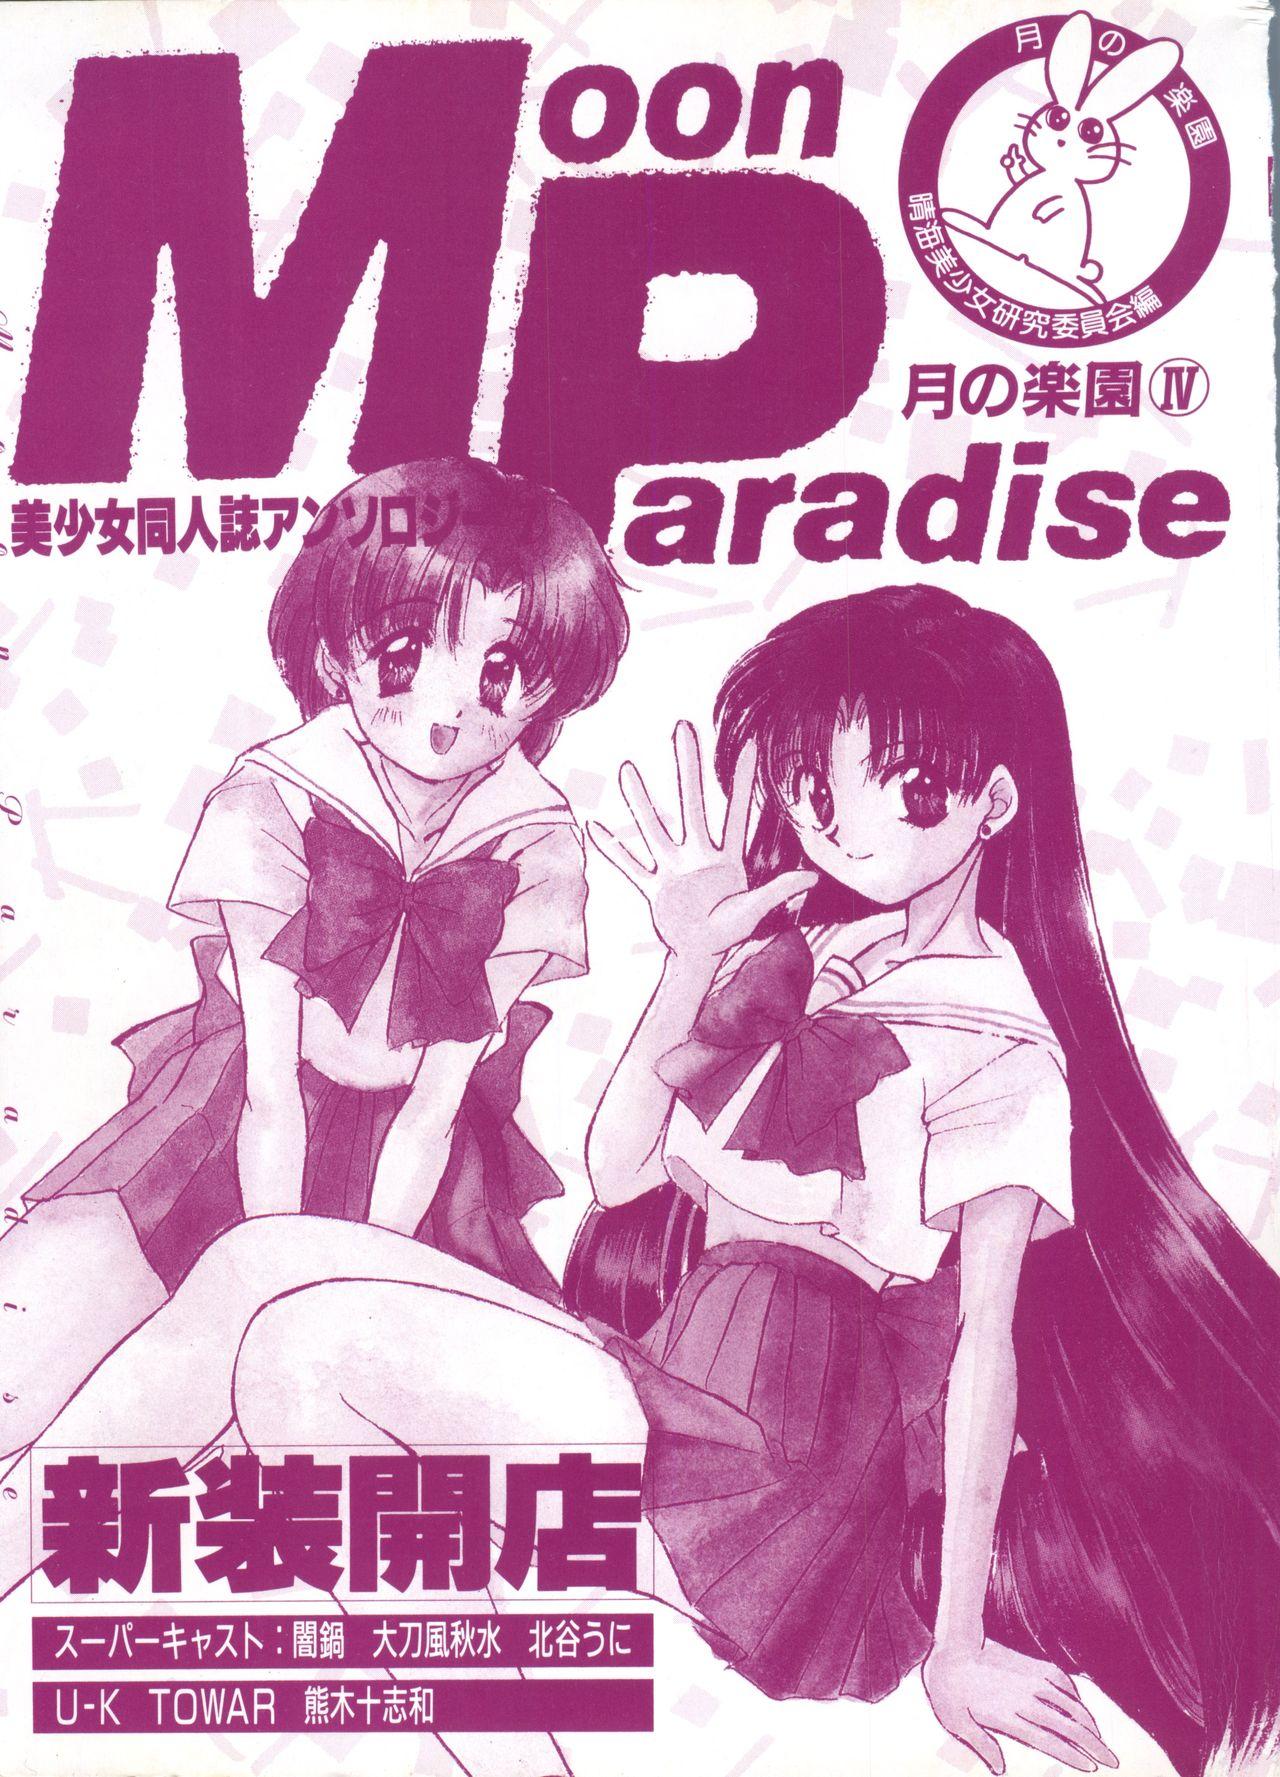 Bishoujo Doujinshi Anthology 7 - Moon Paradise 4 Tsuki no Rakuen 3